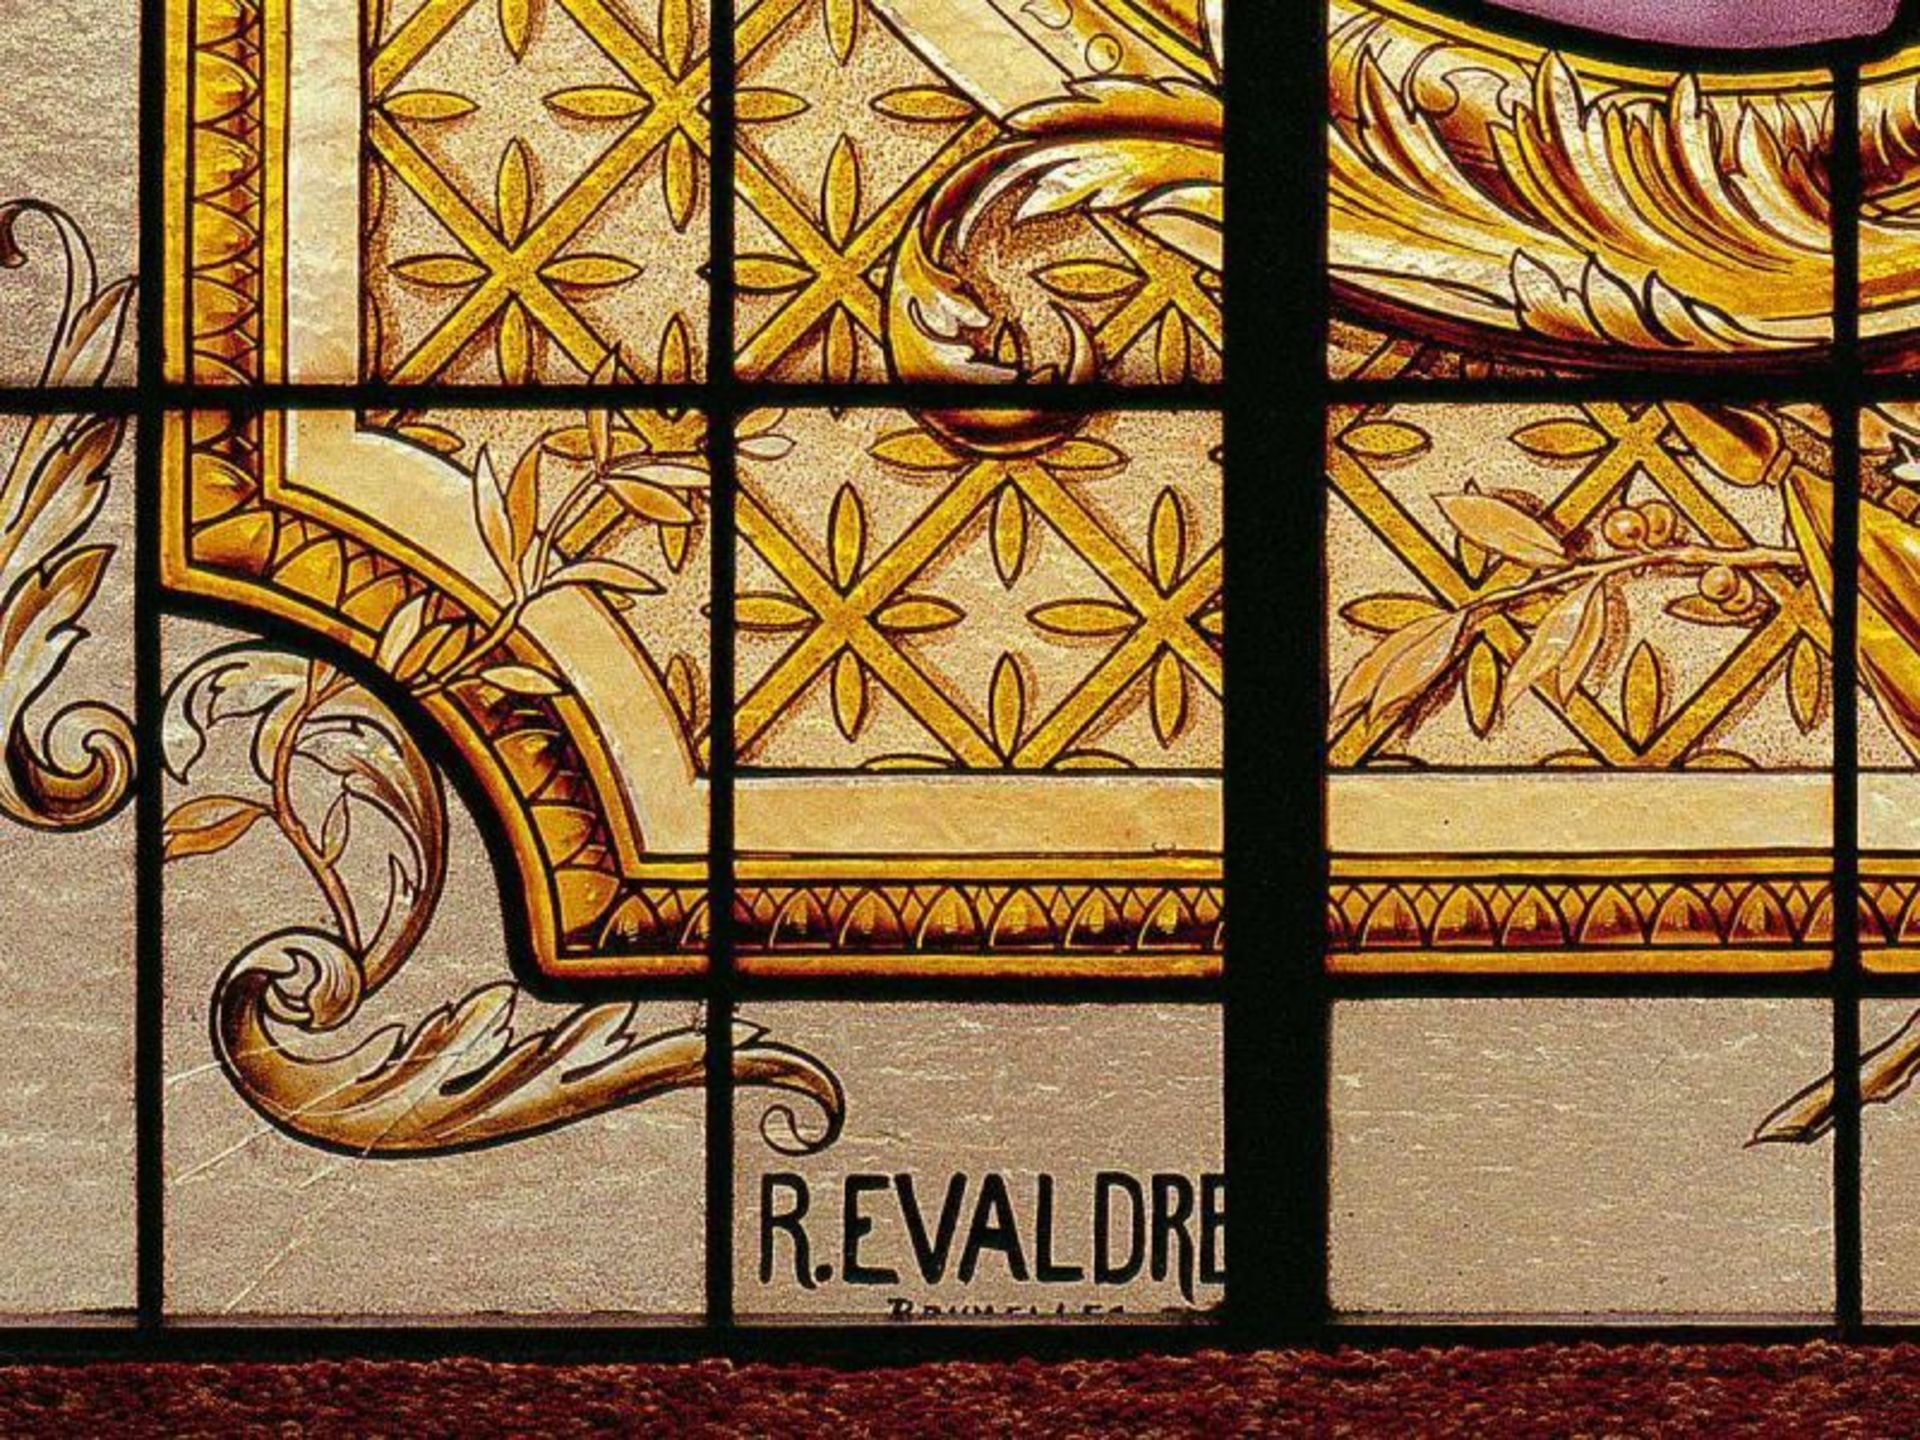 Évaldre, Raphaël 1862 Lille - 1938 Uccle.Museales Jugendstilfenster. Belgien um 1900. Farbloses - Image 3 of 3